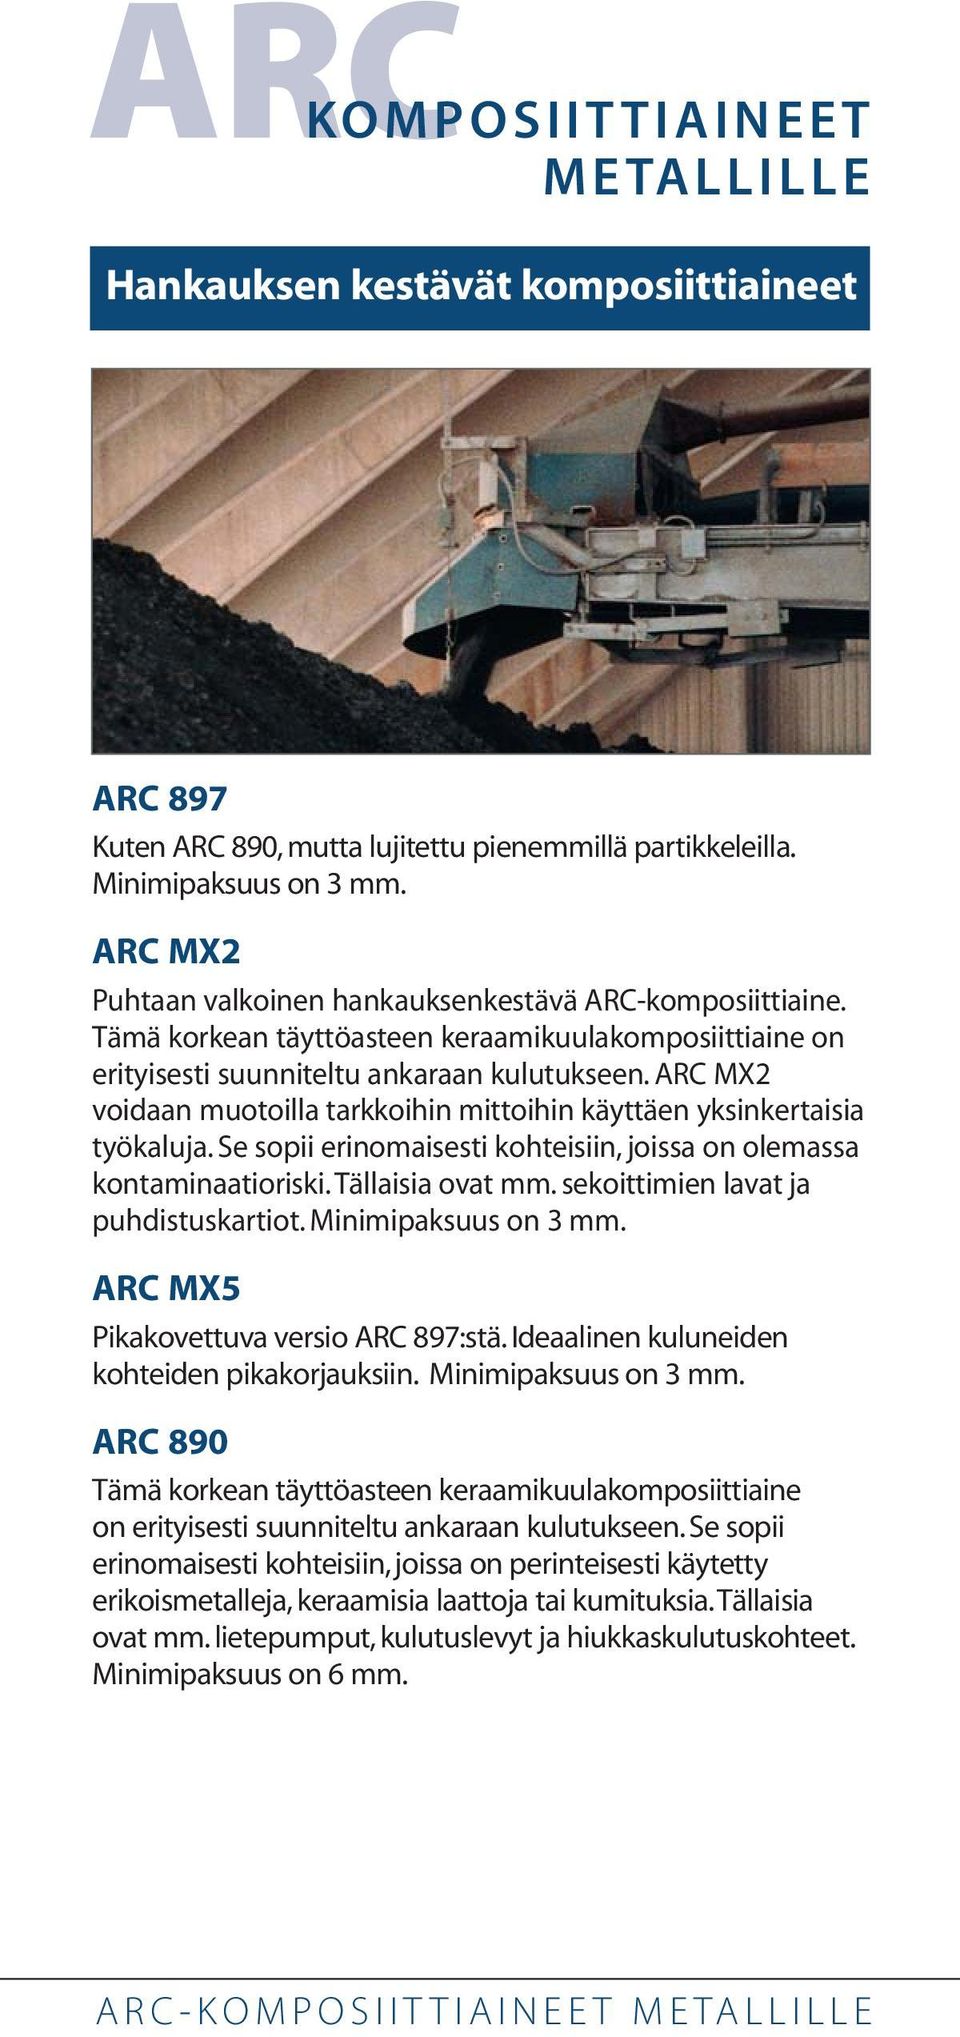 ARC MX2 voidaan muotoilla tarkkoihin mittoihin käyttäen yksinkertaisia työkaluja. Se sopii erinomaisesti kohteisiin, joissa on olemassa kontaminaatioriski.tällaisia ovat mm.